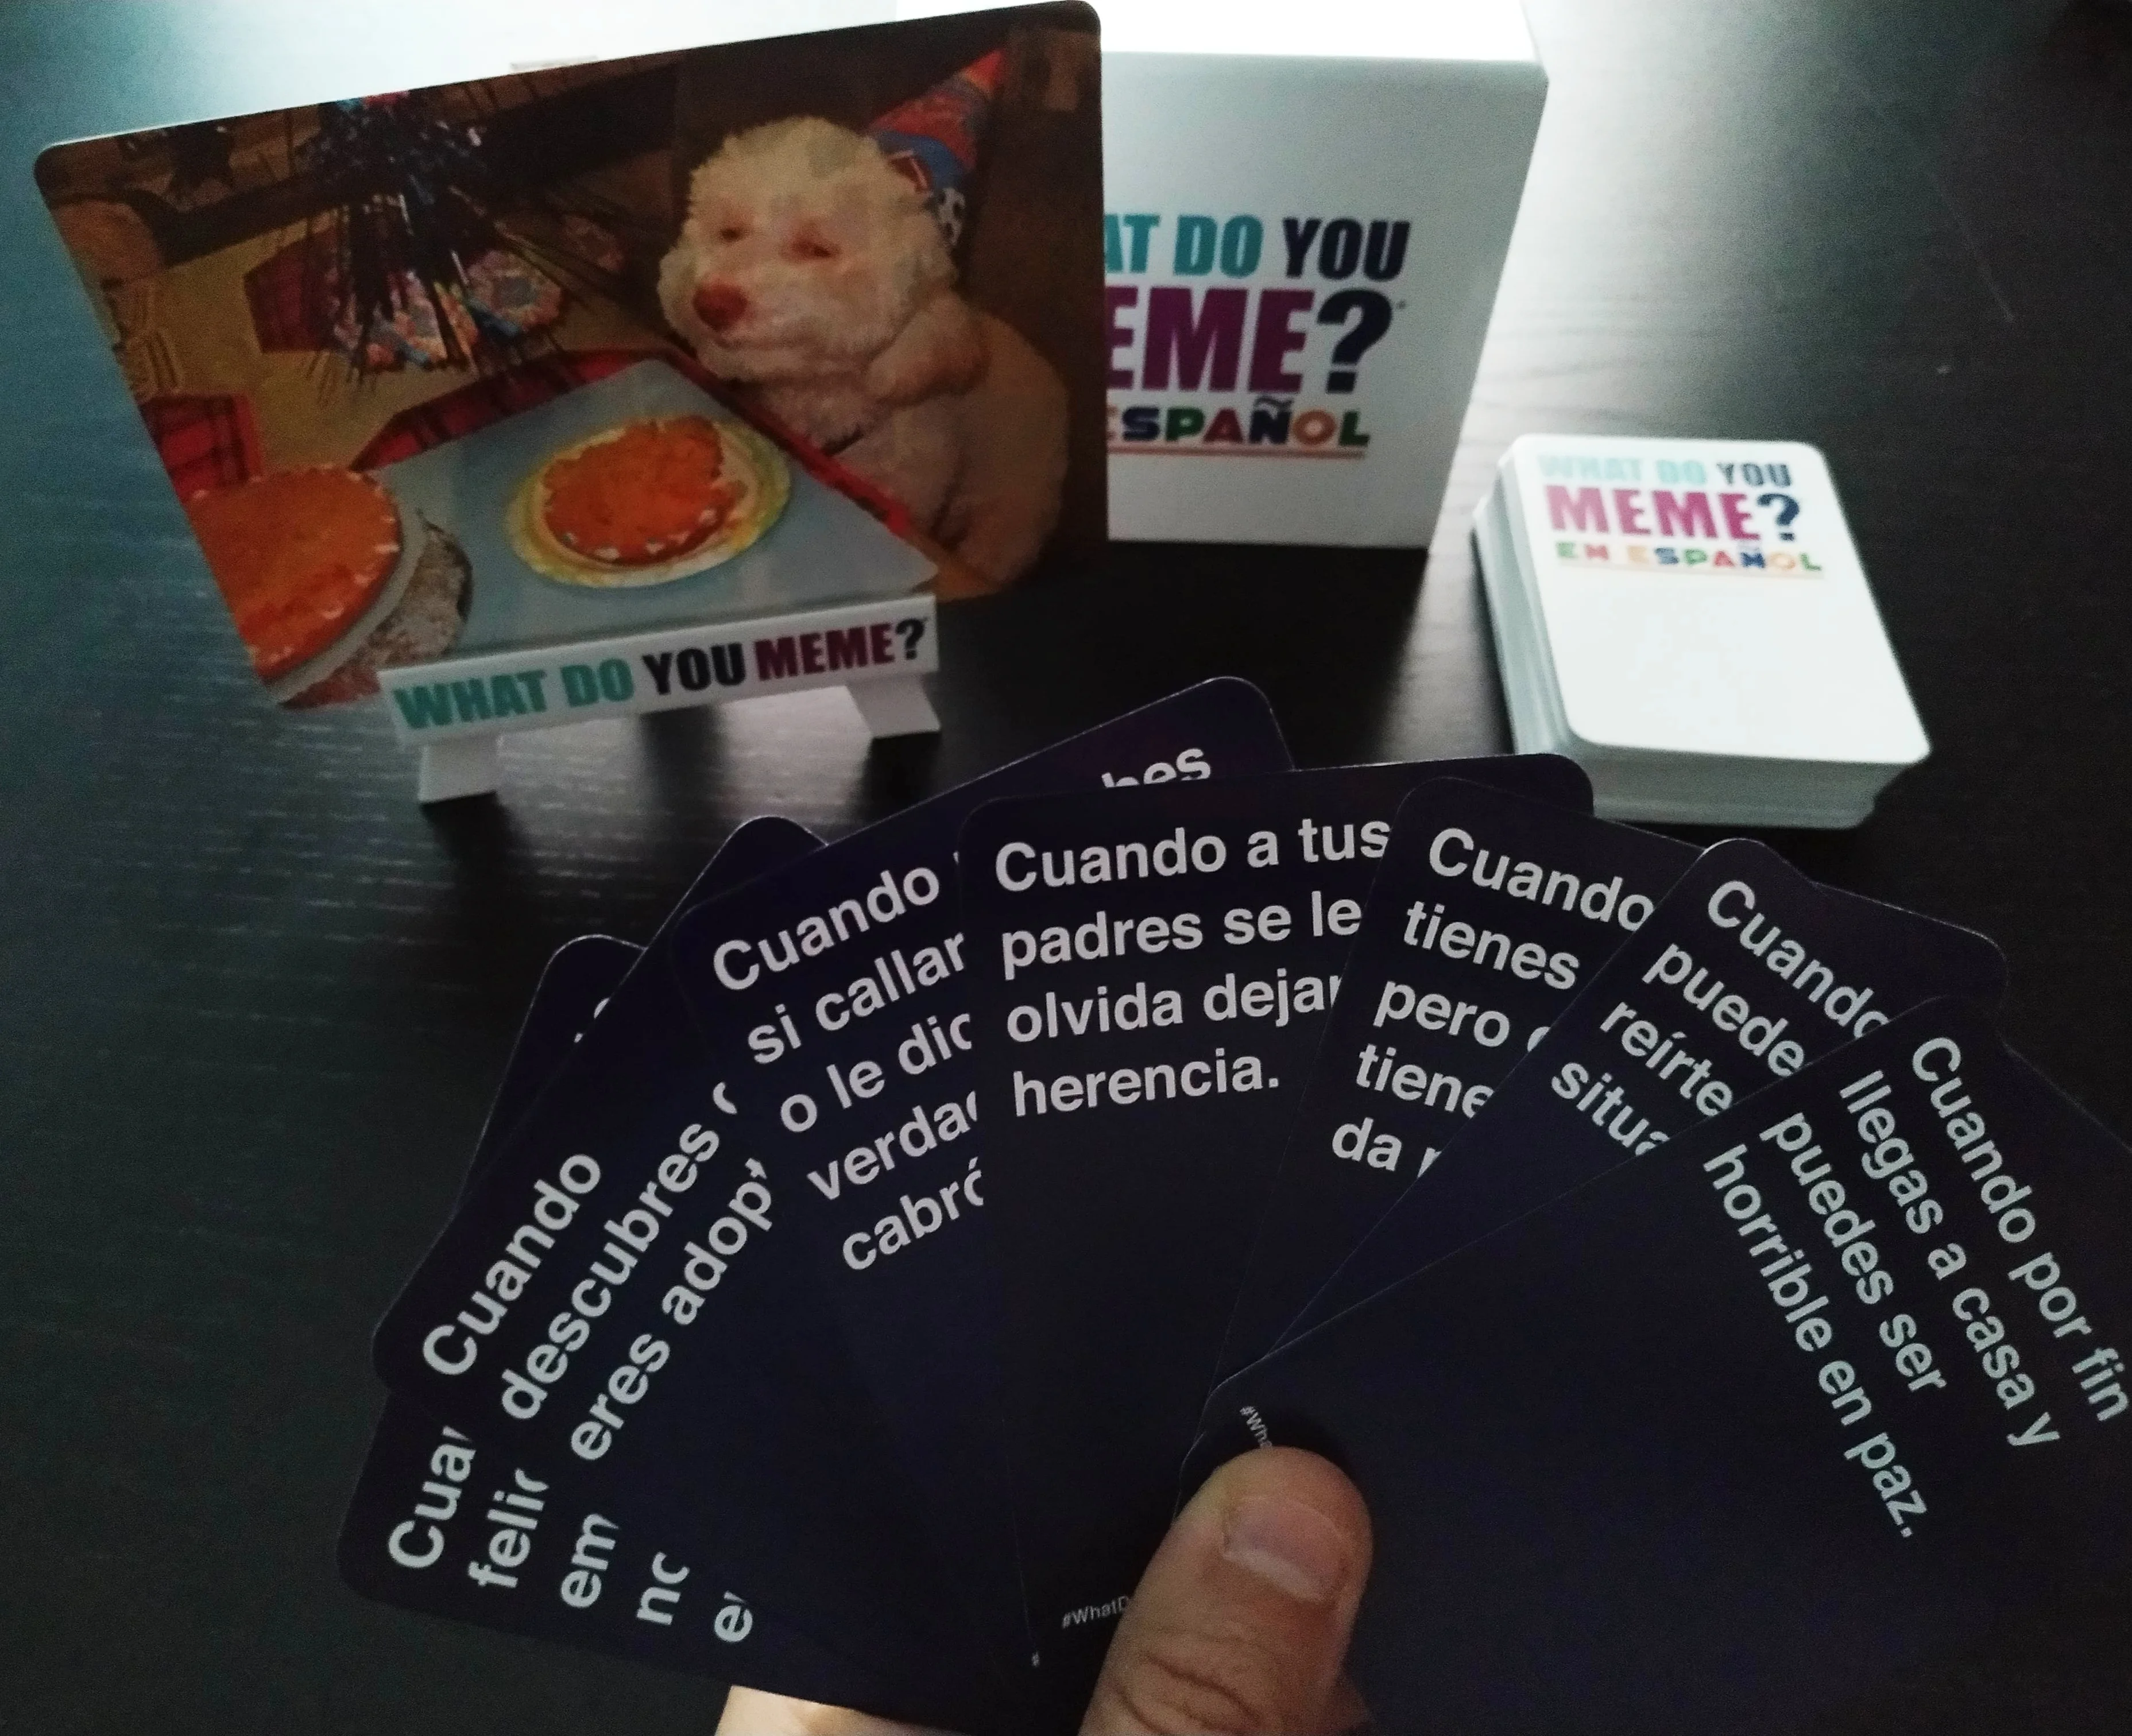 What do you meme? - juego de mesa, Juegos De Mesa